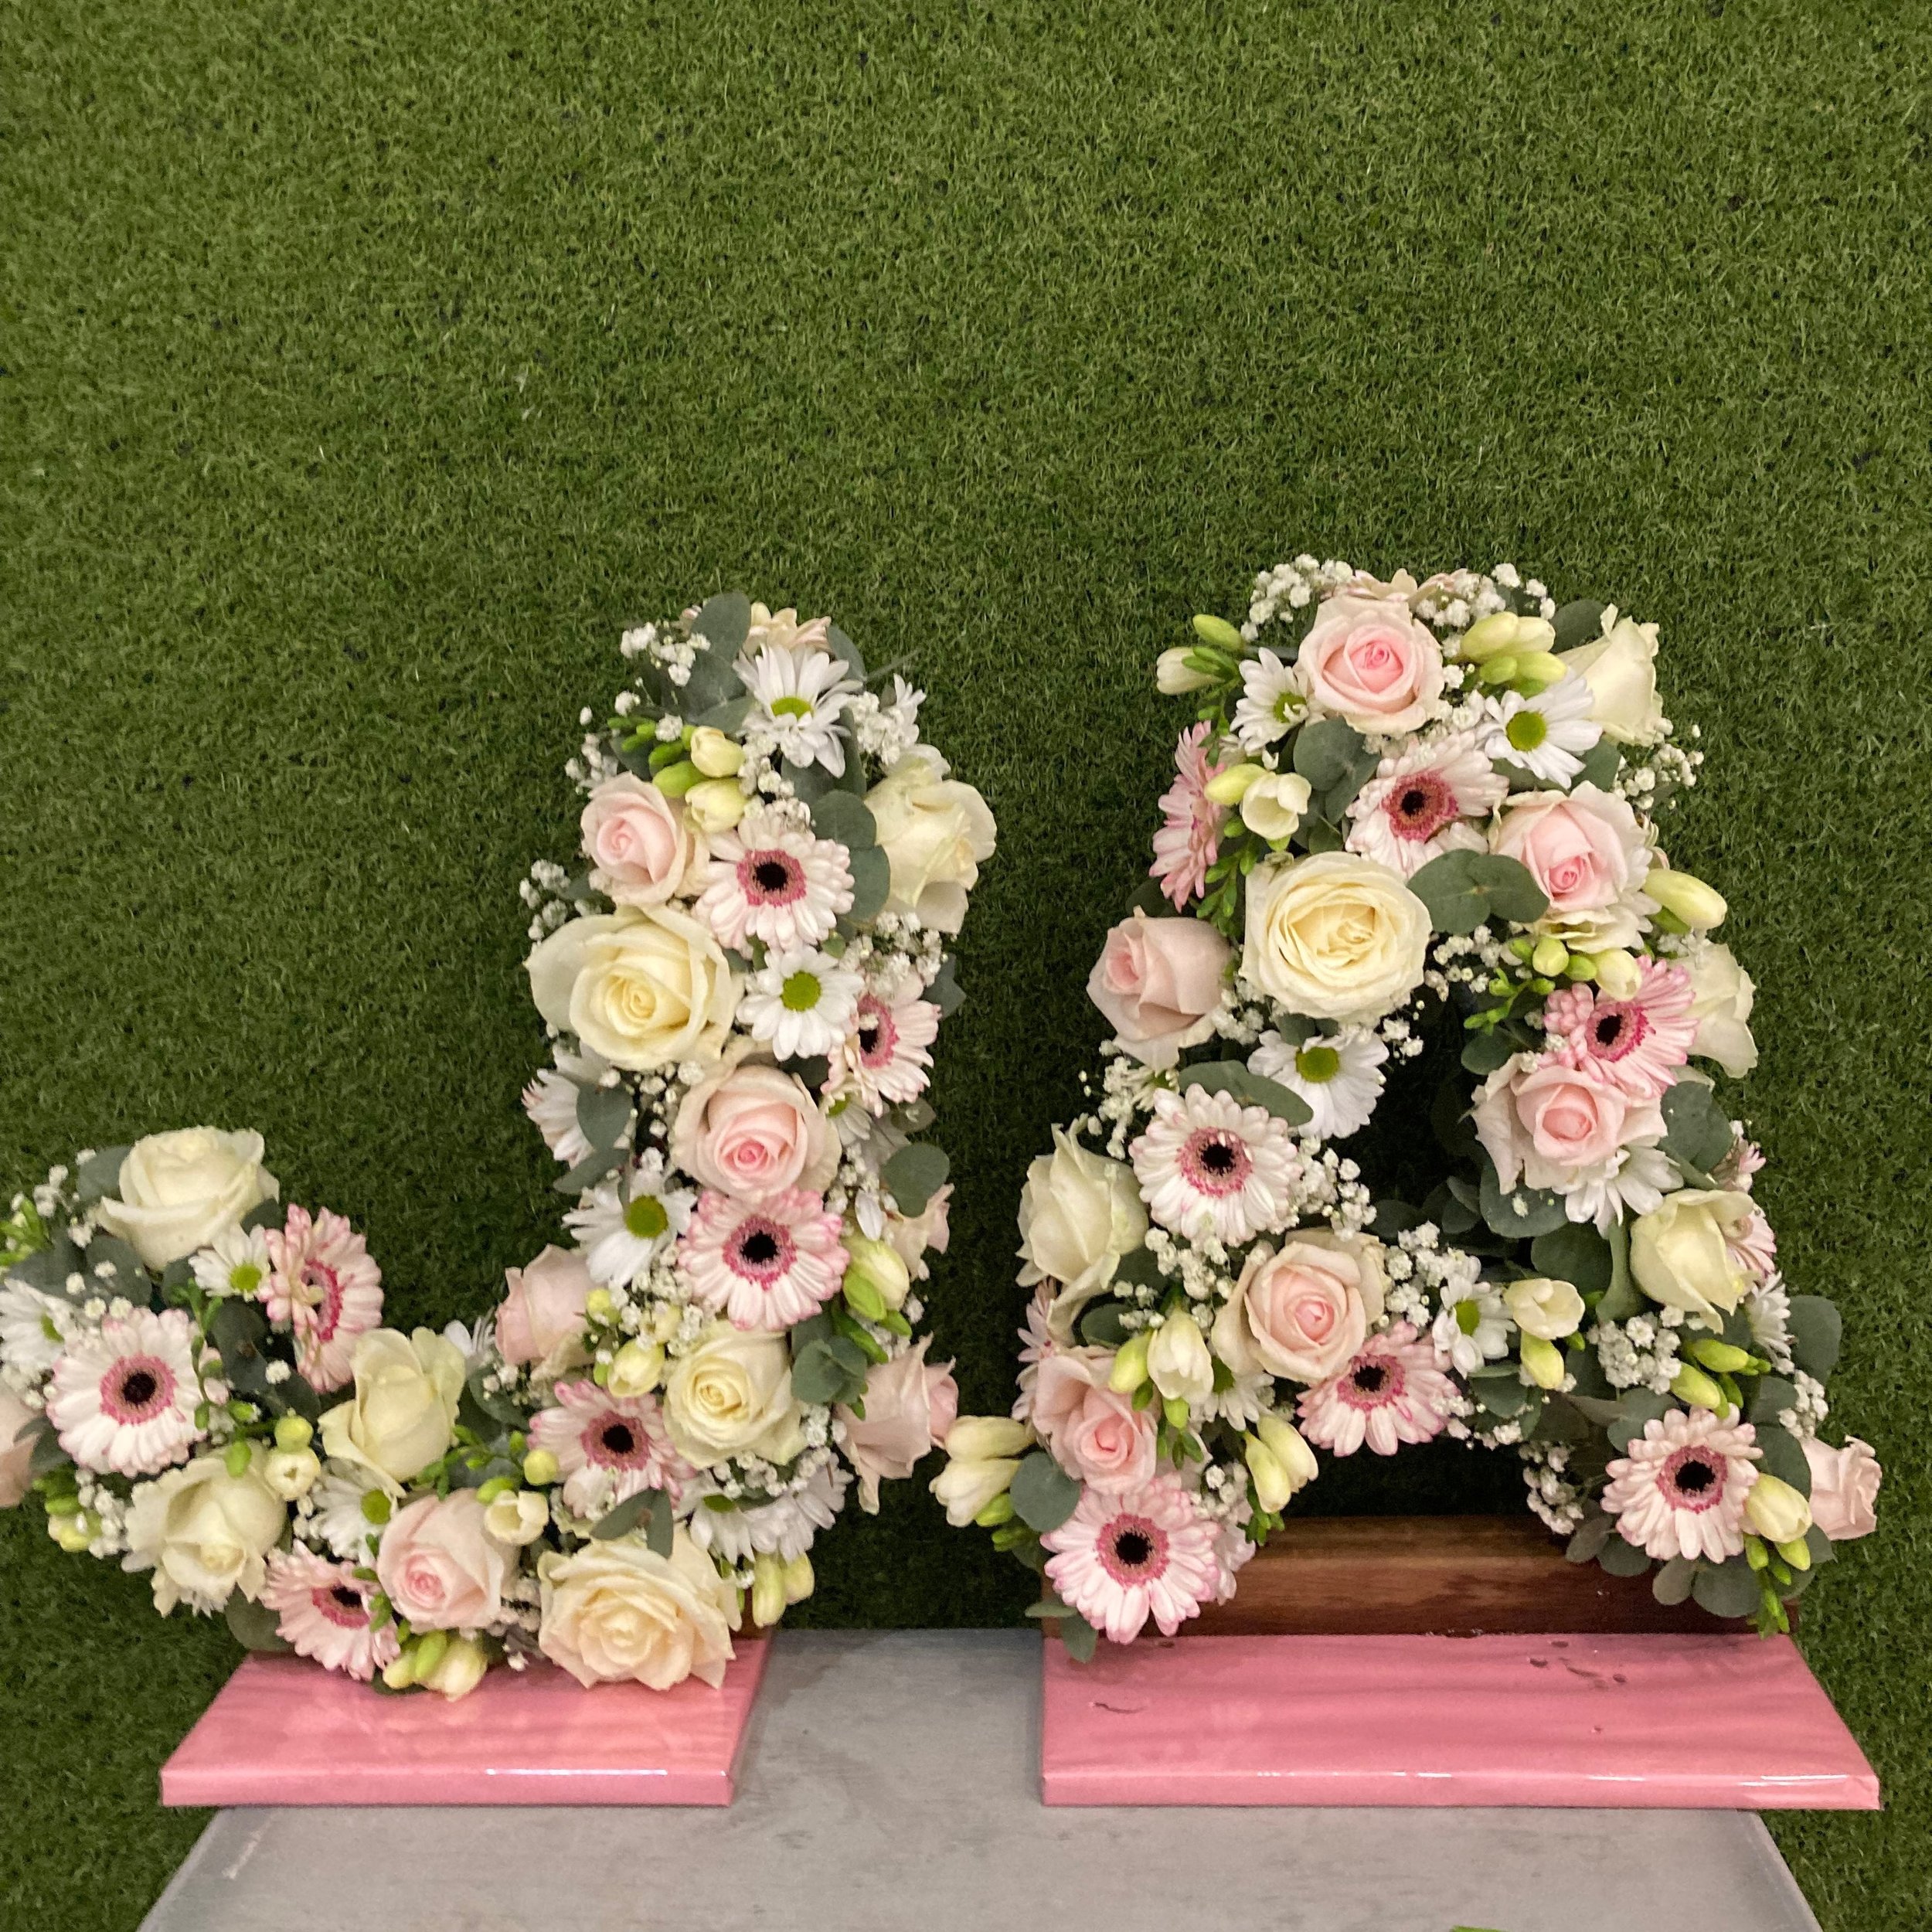 Initiales des mari&eacute;s en fleurs ✨ Vous aimez ? 💐 #fleurs #mariages #amour #initiales #flower